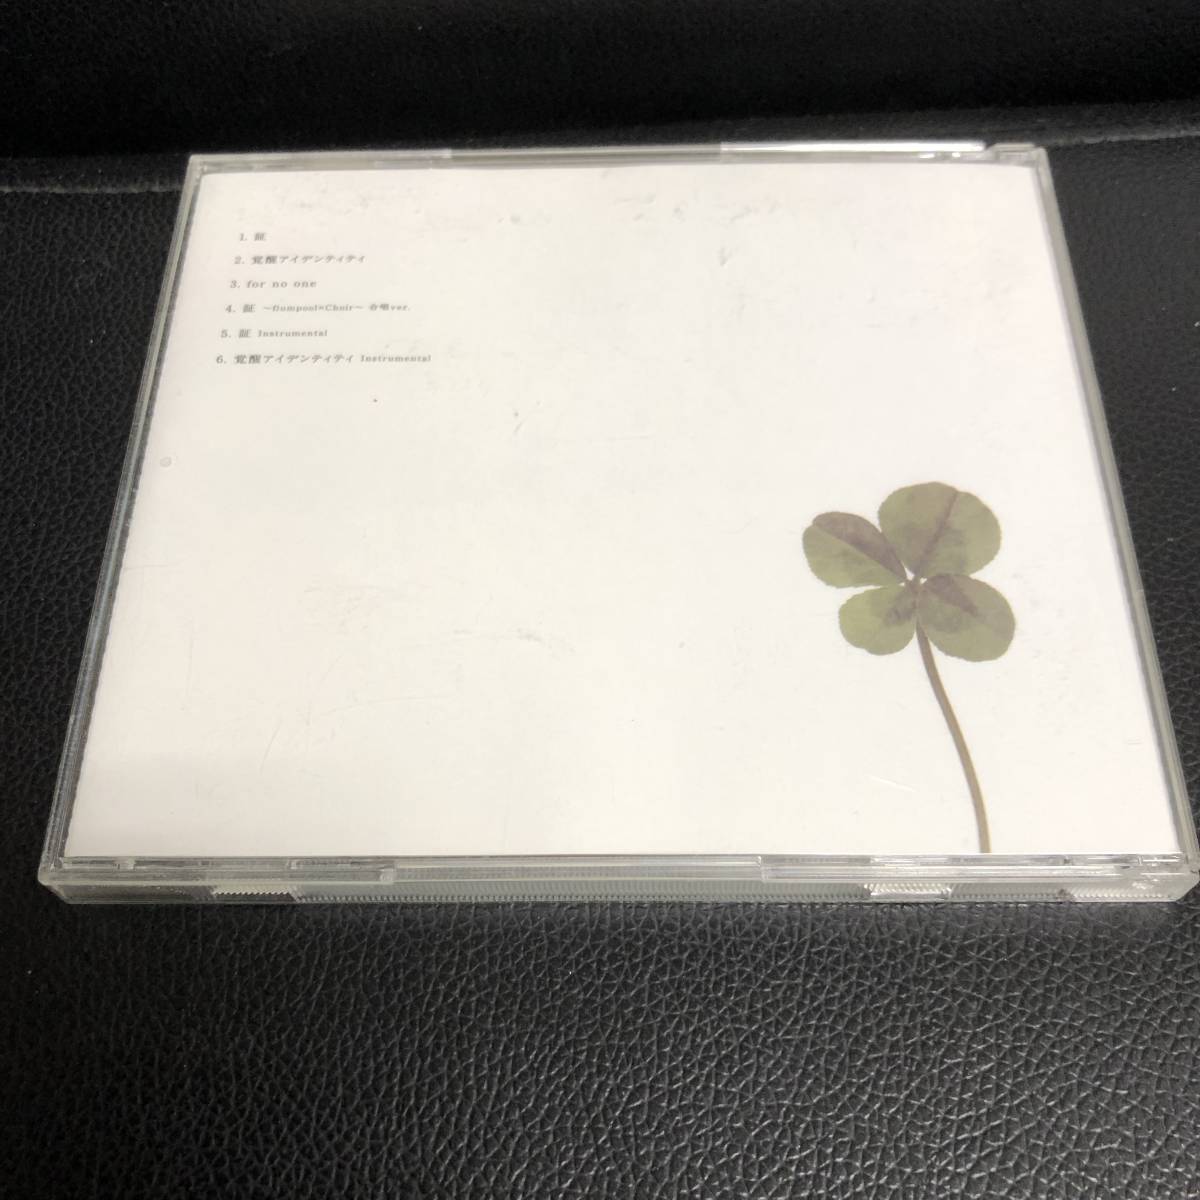 《中古》 音楽CD「flumpool：証 / 覚醒アイデンティティ」 シングル J-POP 邦楽 _画像2